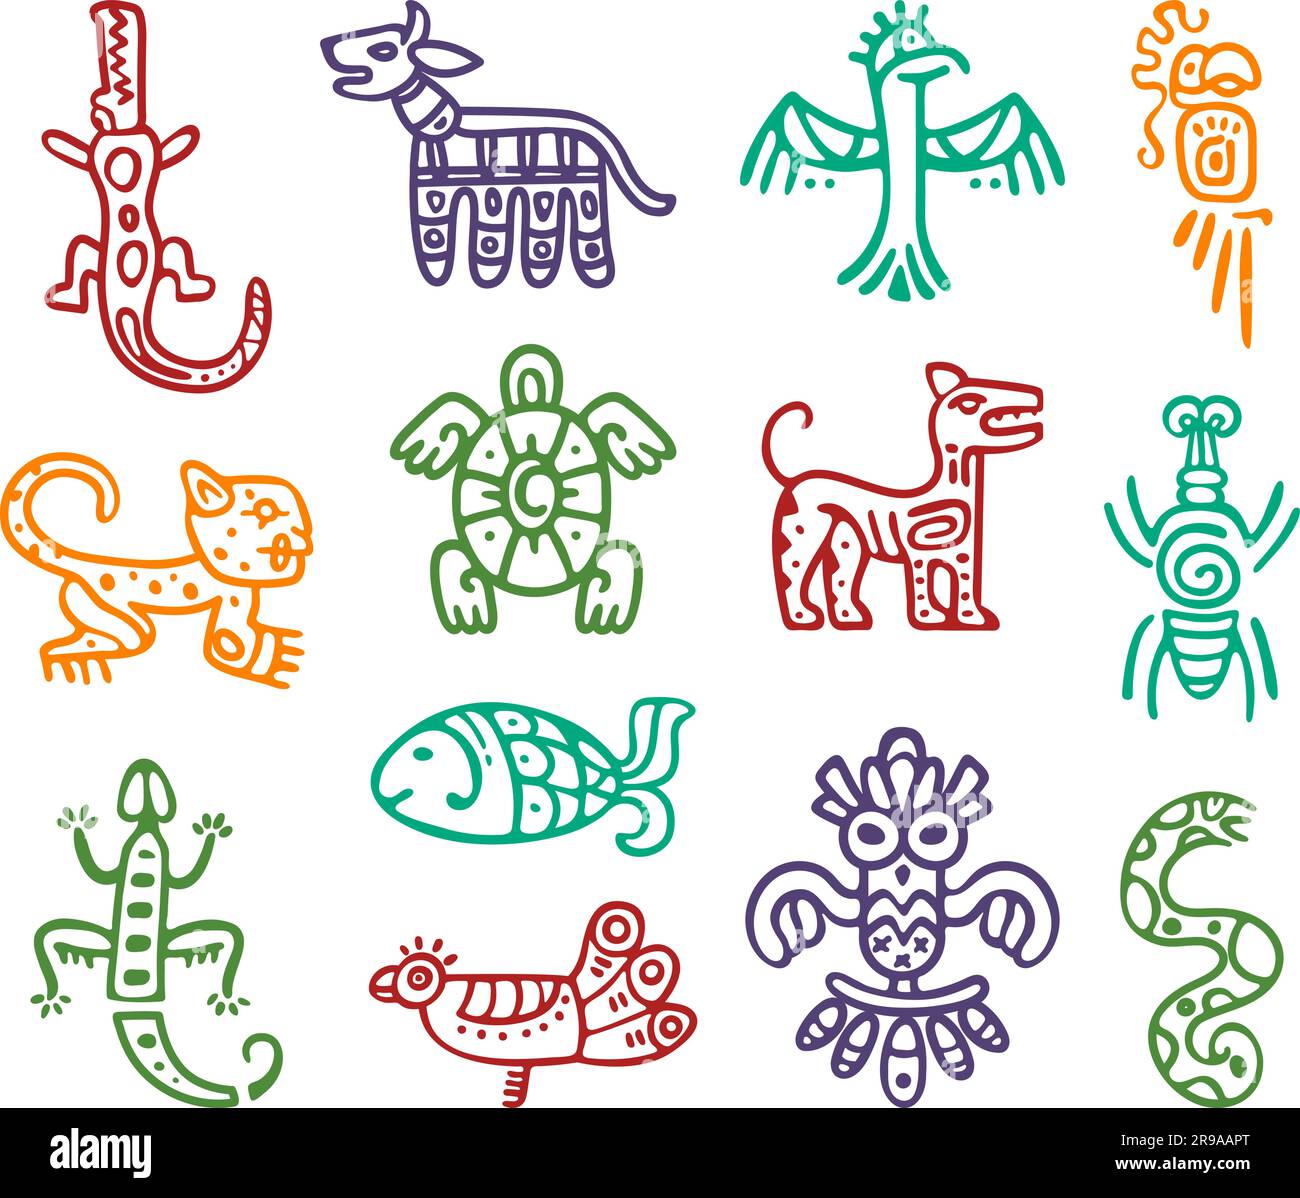 Elementi isolati totem Maya aztec. Segni idoli del Sud america, aquila e pesci. Icone indigene astratte tribali messicane. Decorazioni vettoriali di classe Illustrazione Vettoriale